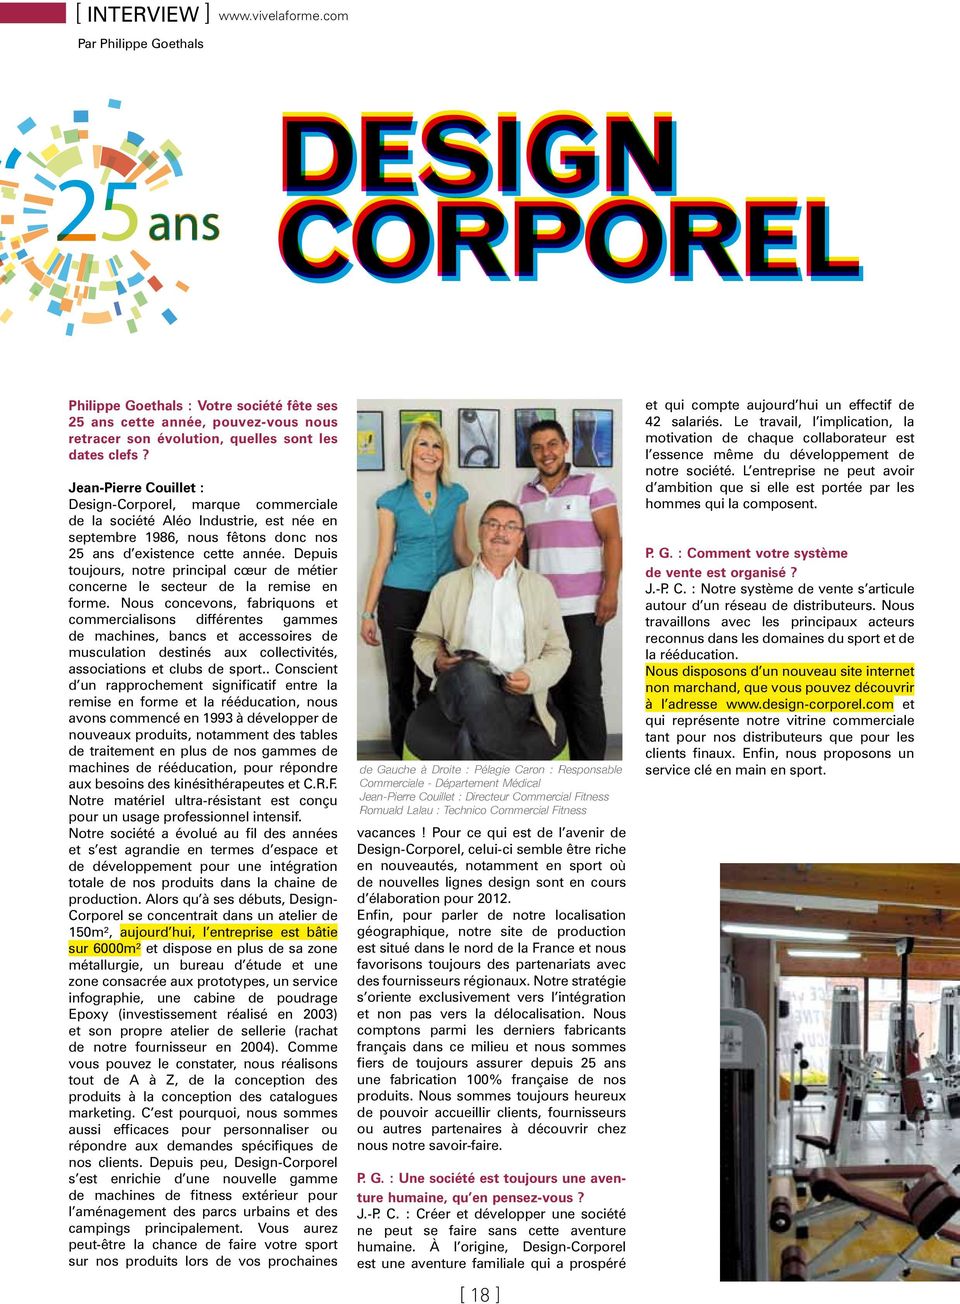 Jean-Pierre Couillet : Design-Corporel, marque commerciale de la société Aléo Industrie, est née en septembre 1986, nous fêtons donc nos 25 ans d existence cette année.